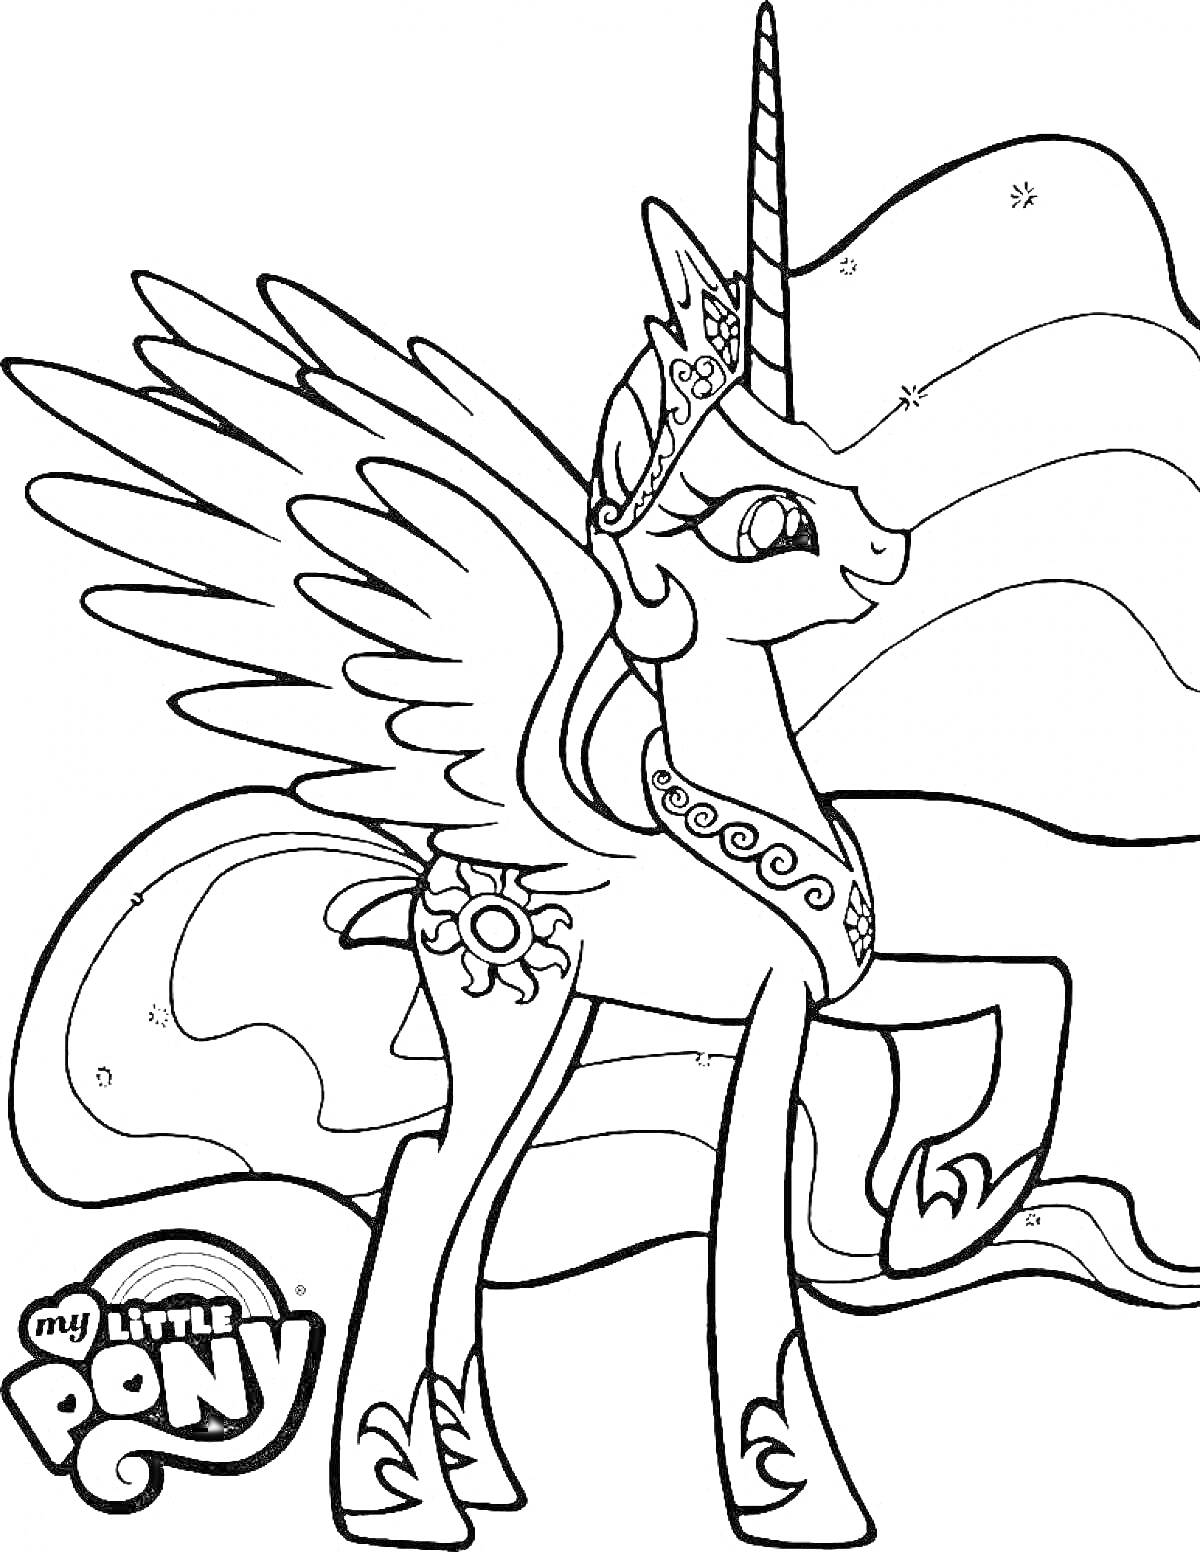 Пони Селестия с короной, крыльями и рогом, эмблемой солнца, развевающейся гривой и логотипом My Little Pony